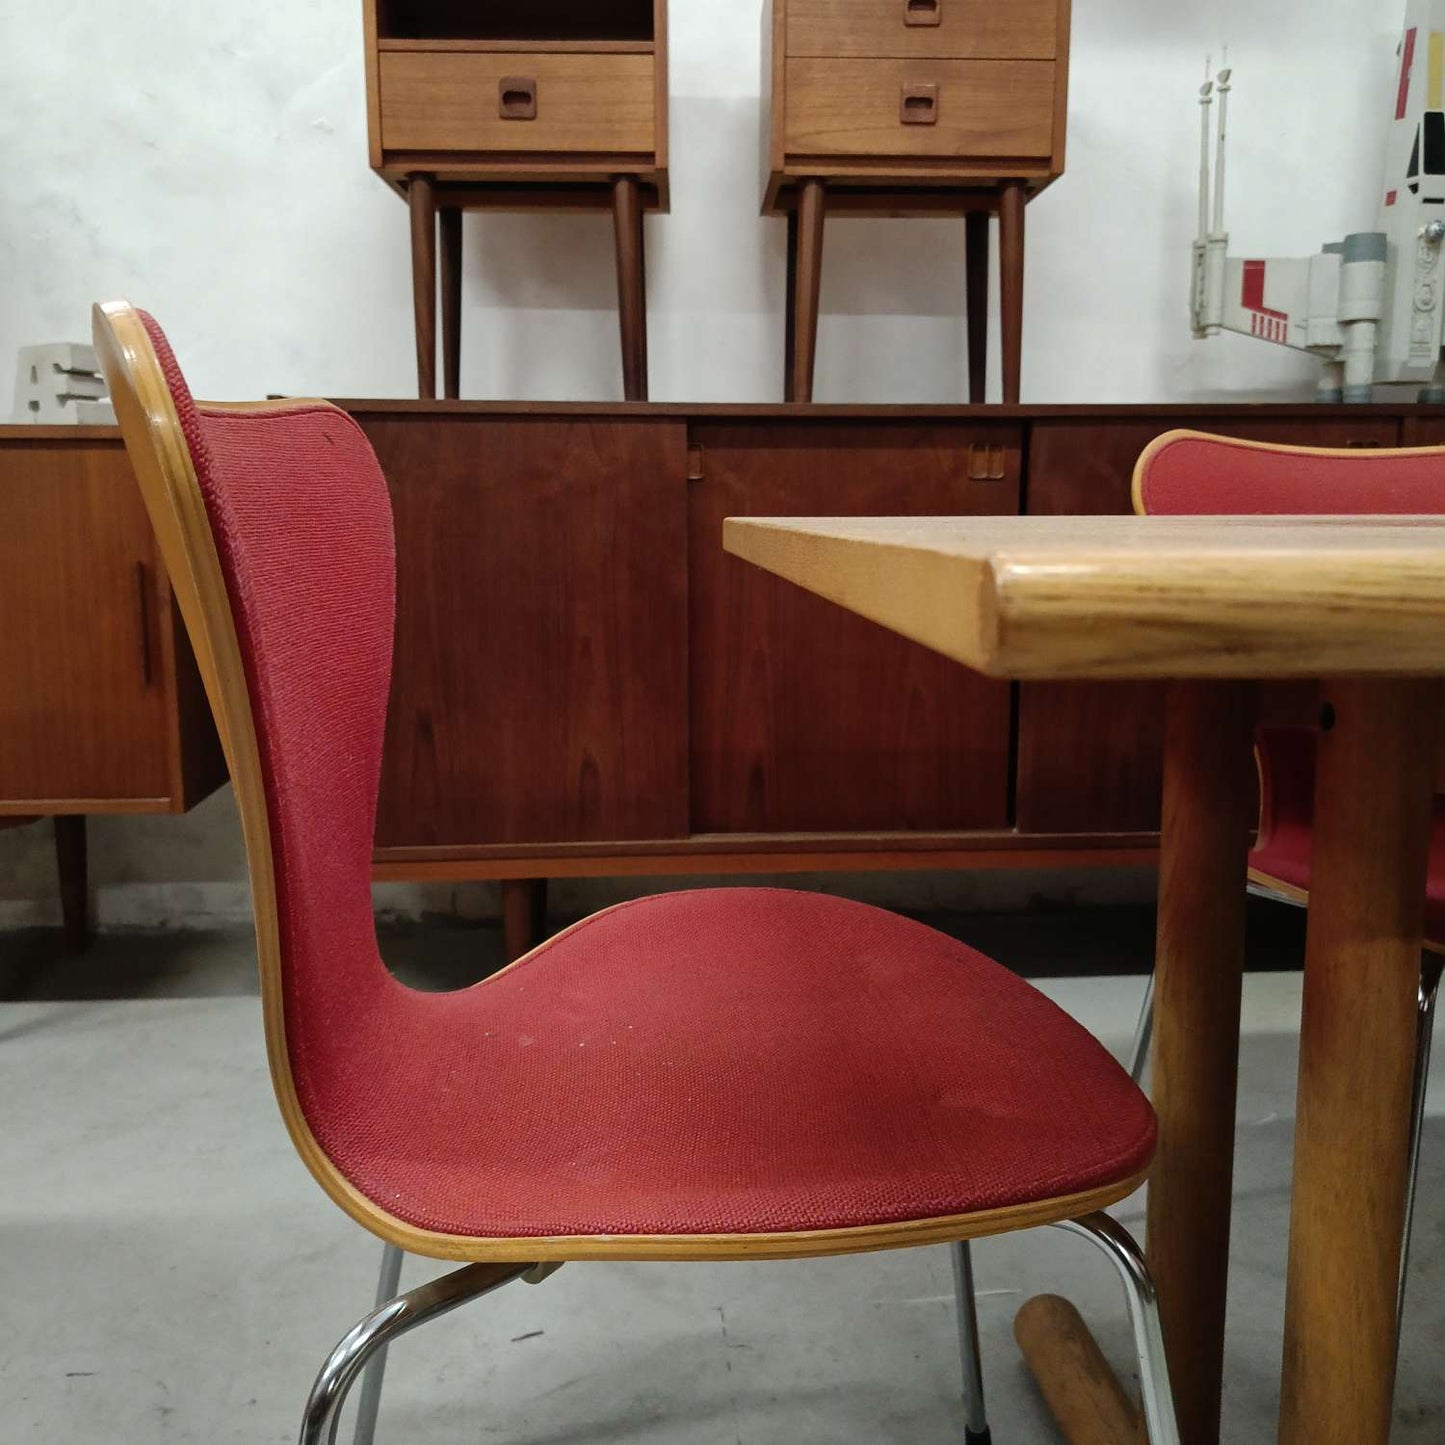 Sedie Arne Jacobsen serie 7 design danese originale vintage anni 60 [79krJbcsn]